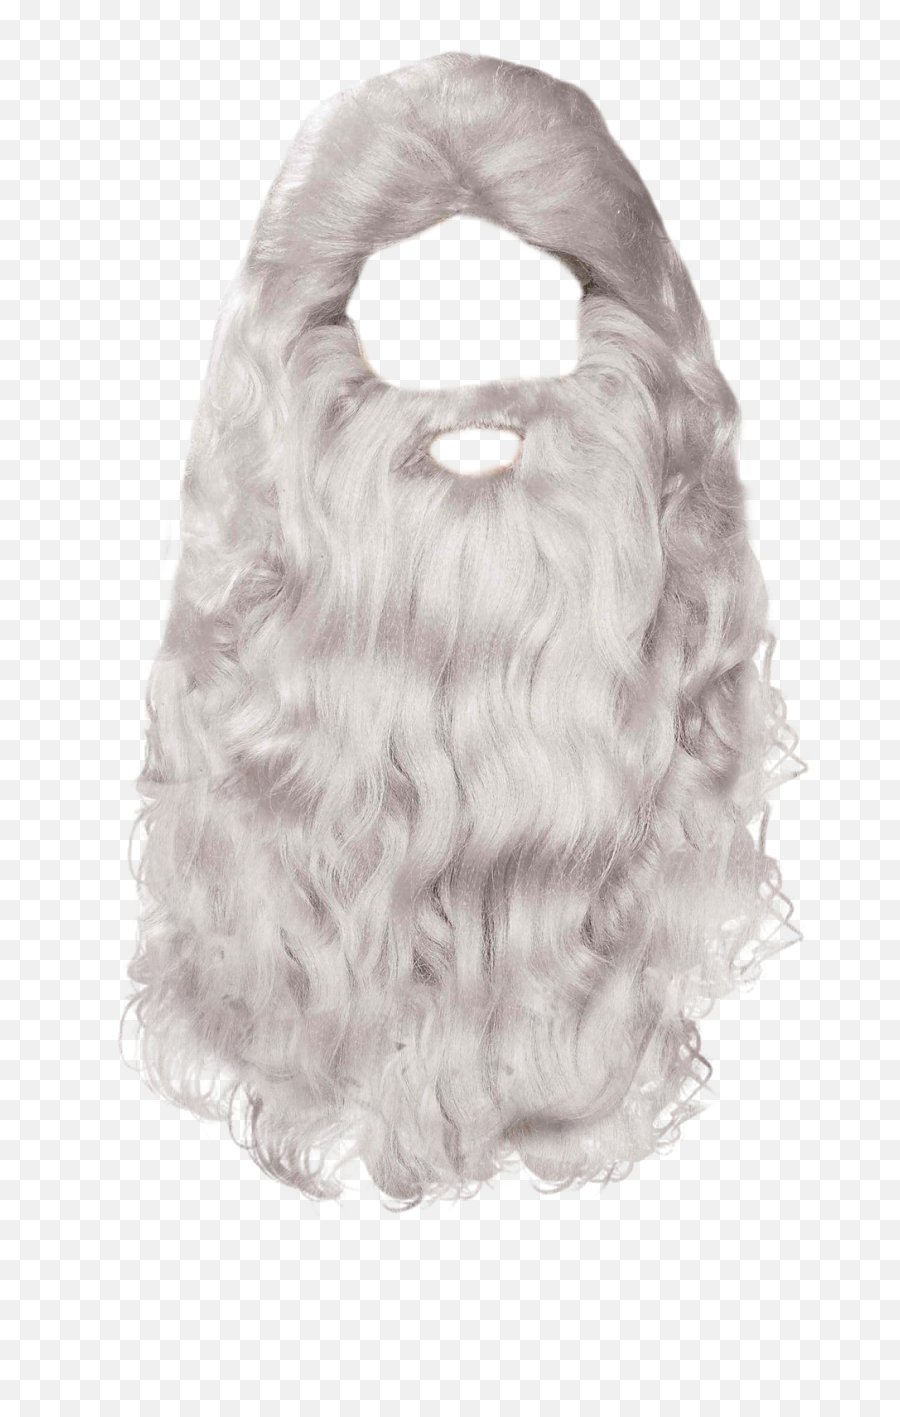 Beard Png Transparent Image - Santa Claus Beard Png,Beard Png